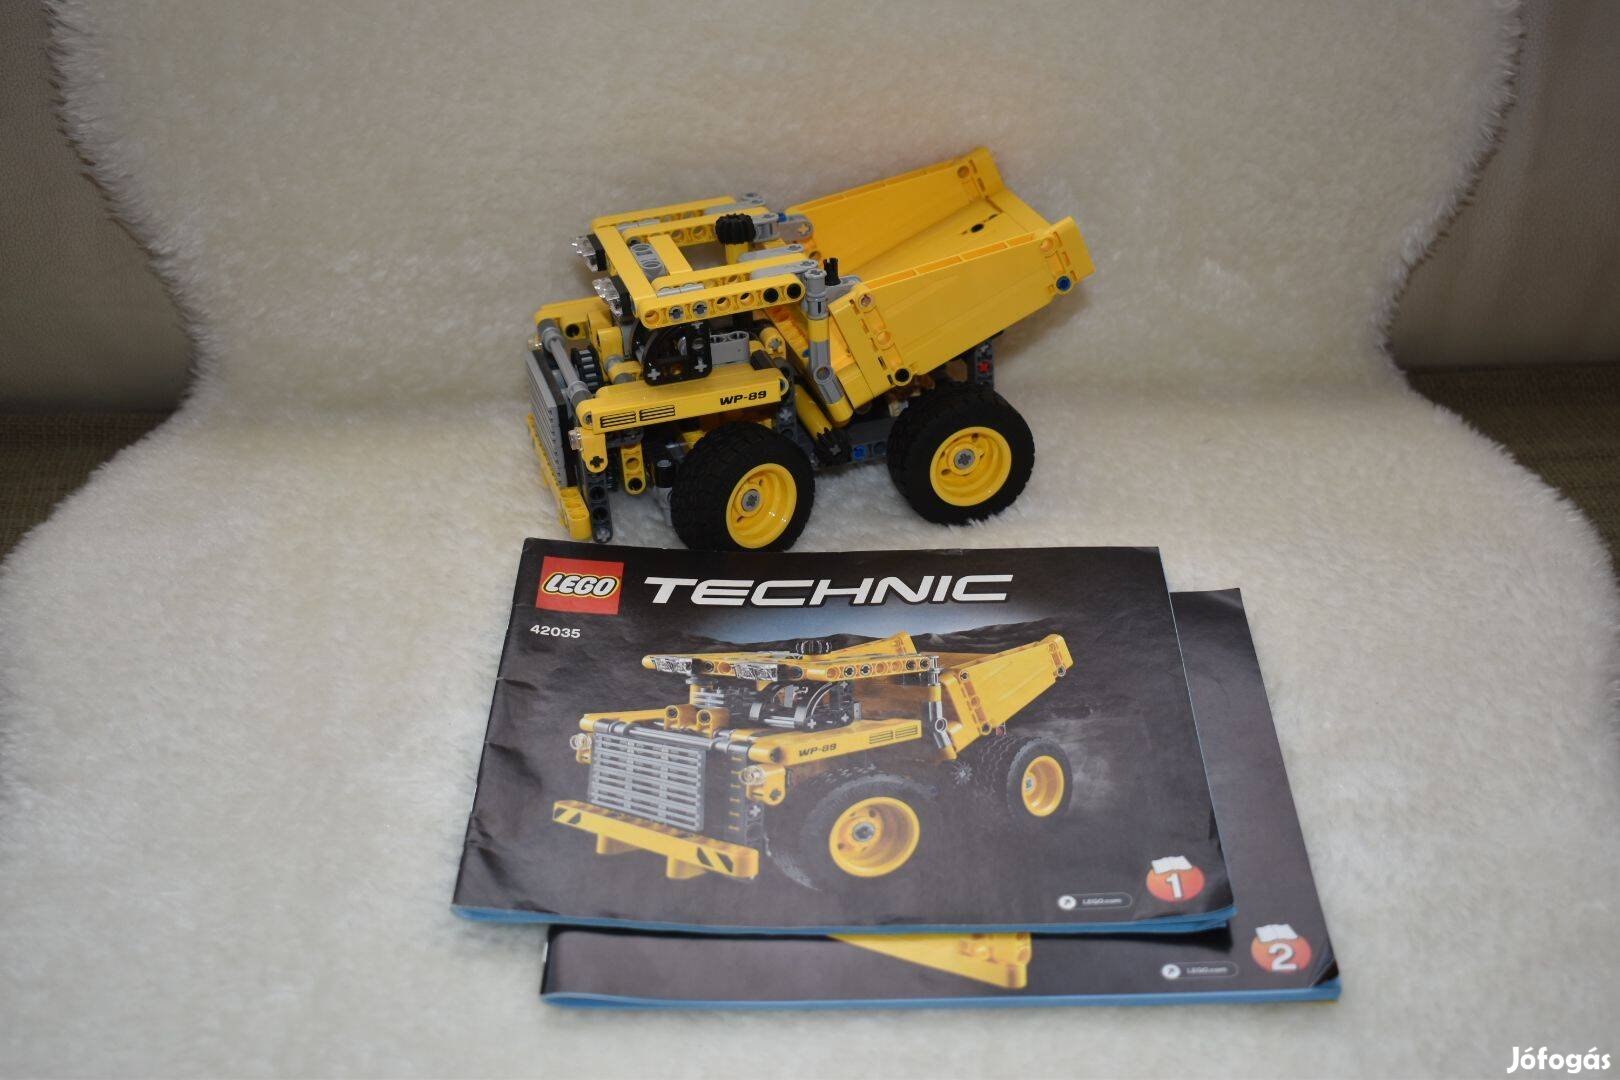 Lego Technic 42035 (Bányadömper)